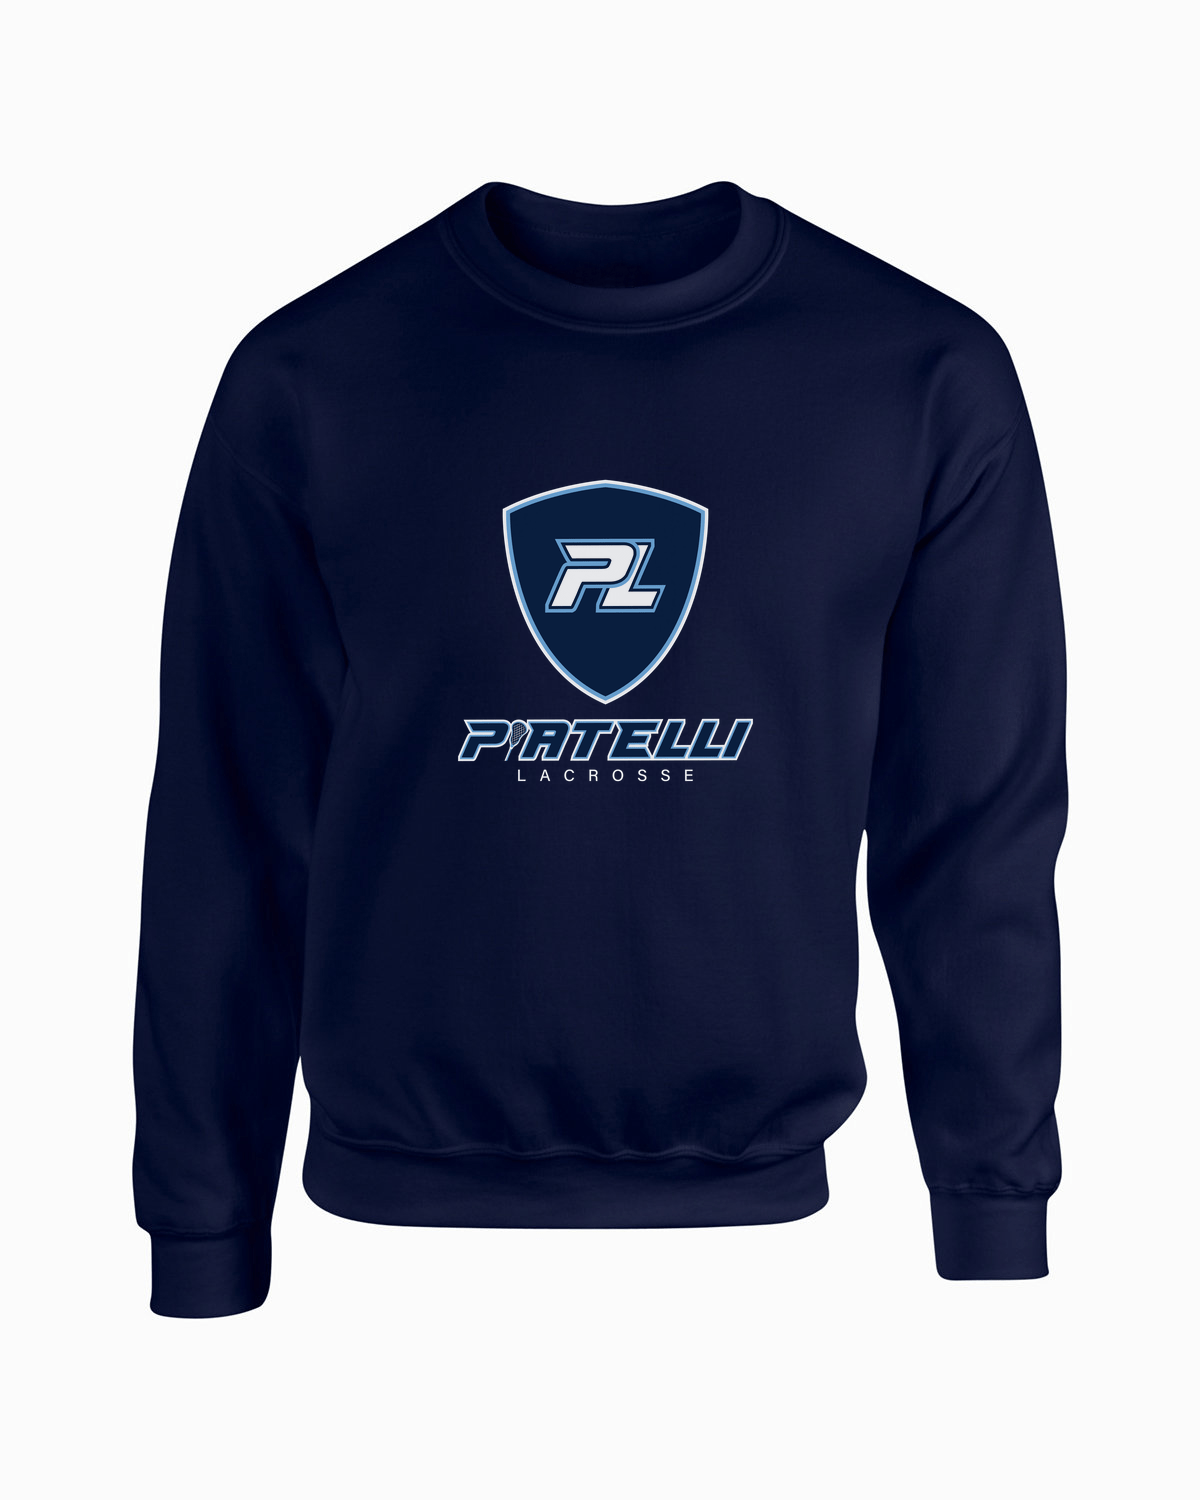 Piatelli Lacrosse Adult Premium Sweatshirt Signature Lacrosse